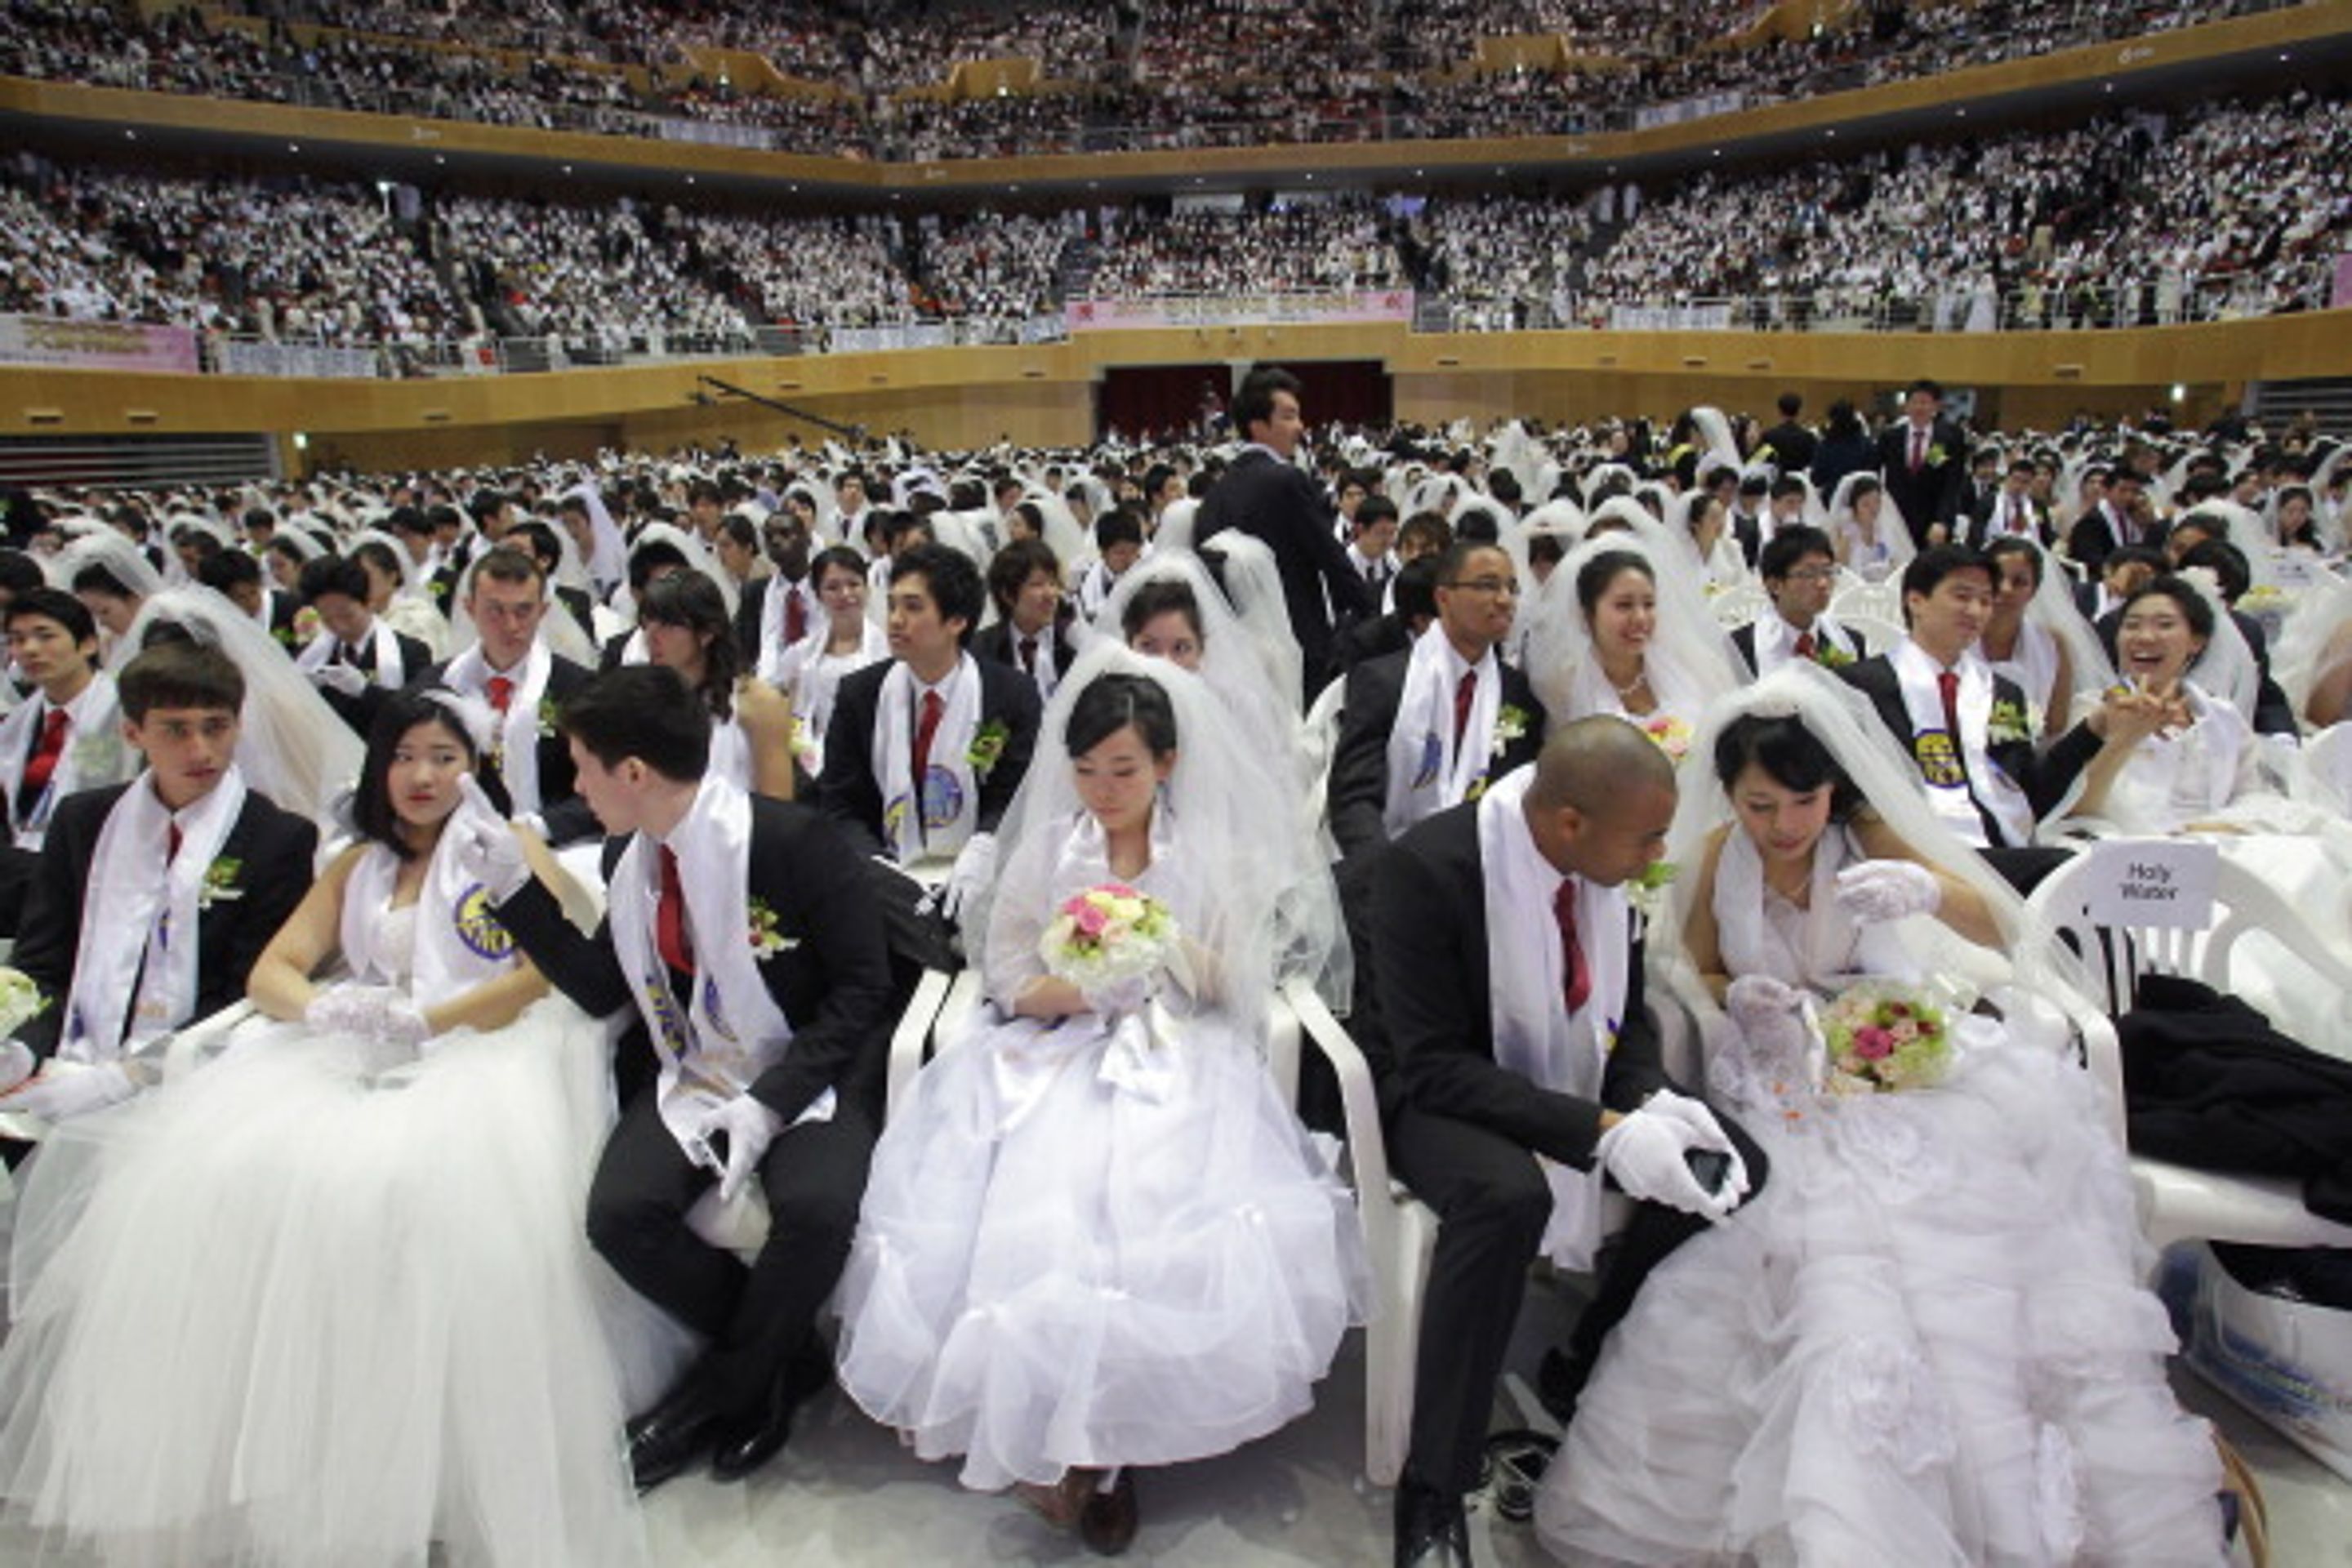 Hromadná svatba v Jižní Koreji - 1 - Svatba ve velkém stylu: Bralo se 3500 párů najednou! (12/12)